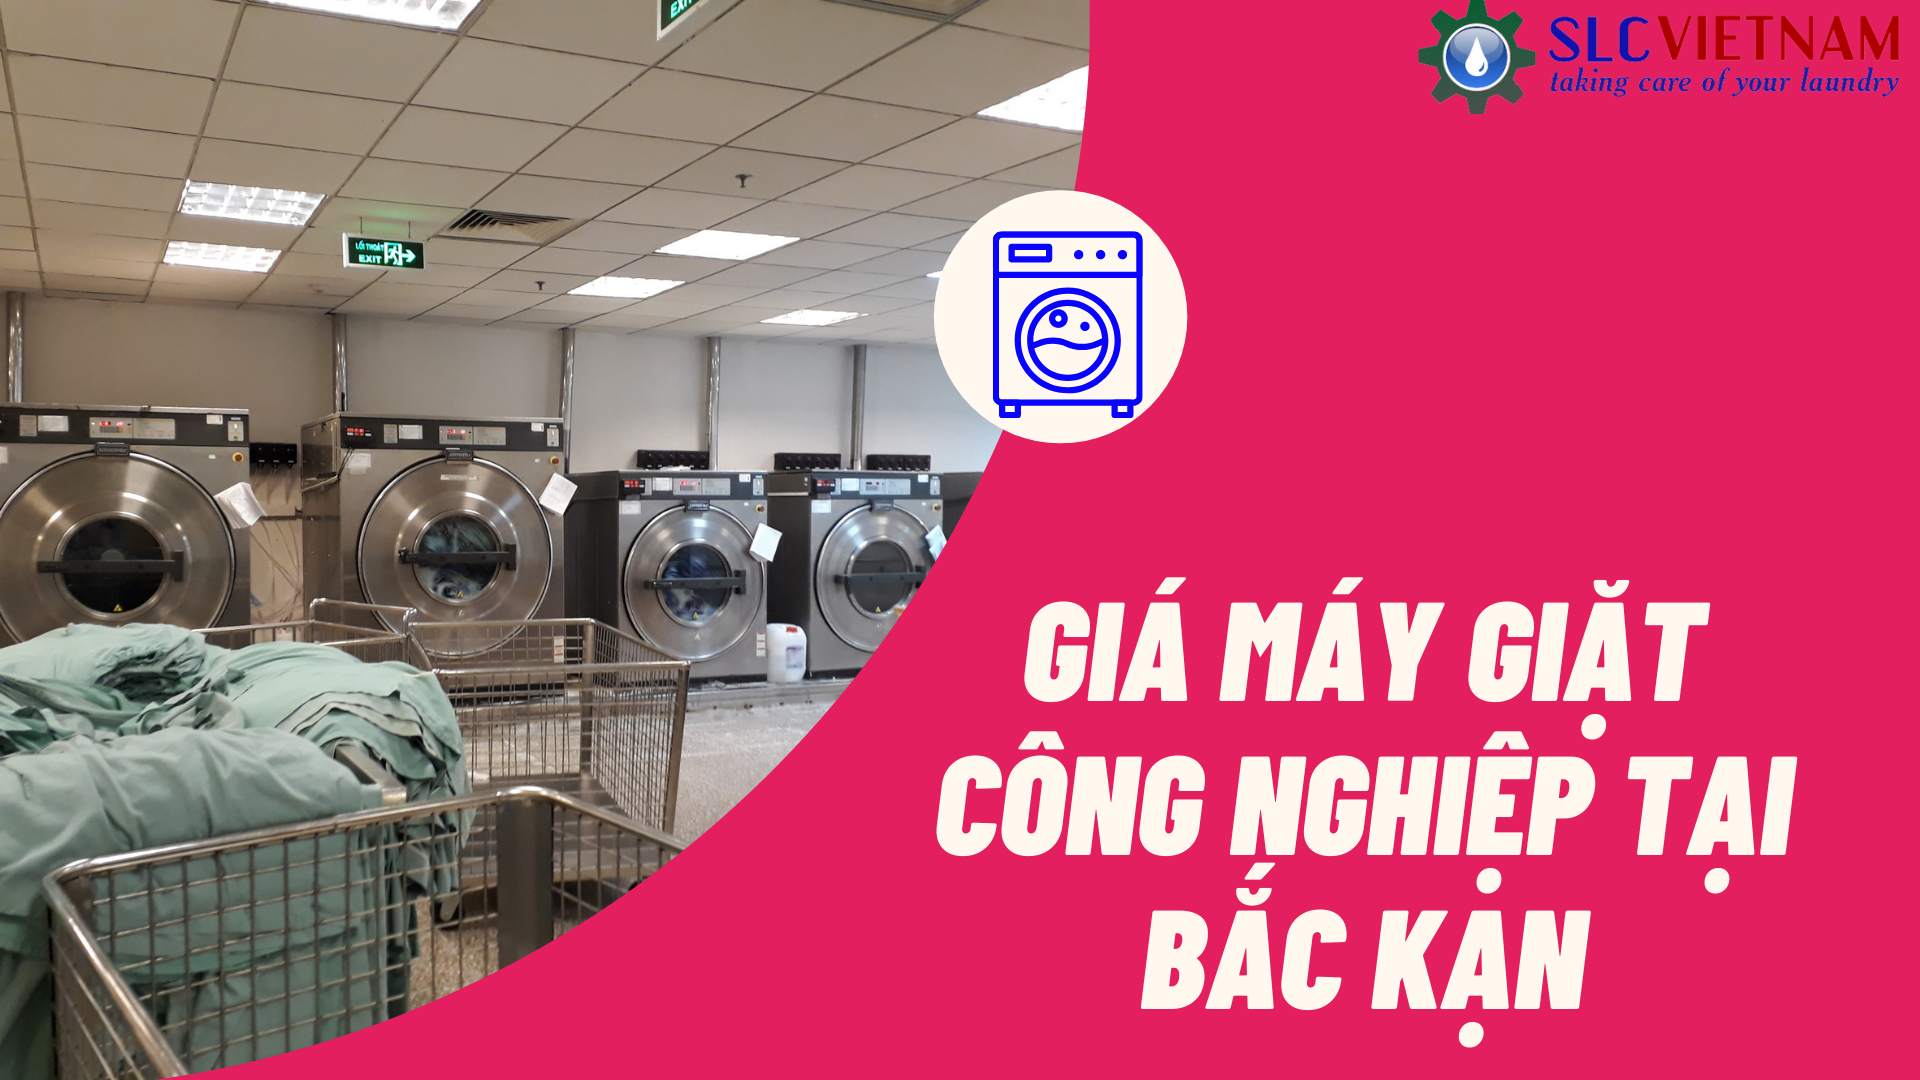 Báo giá máy giặt công nghiệp tại Bắc Kạn